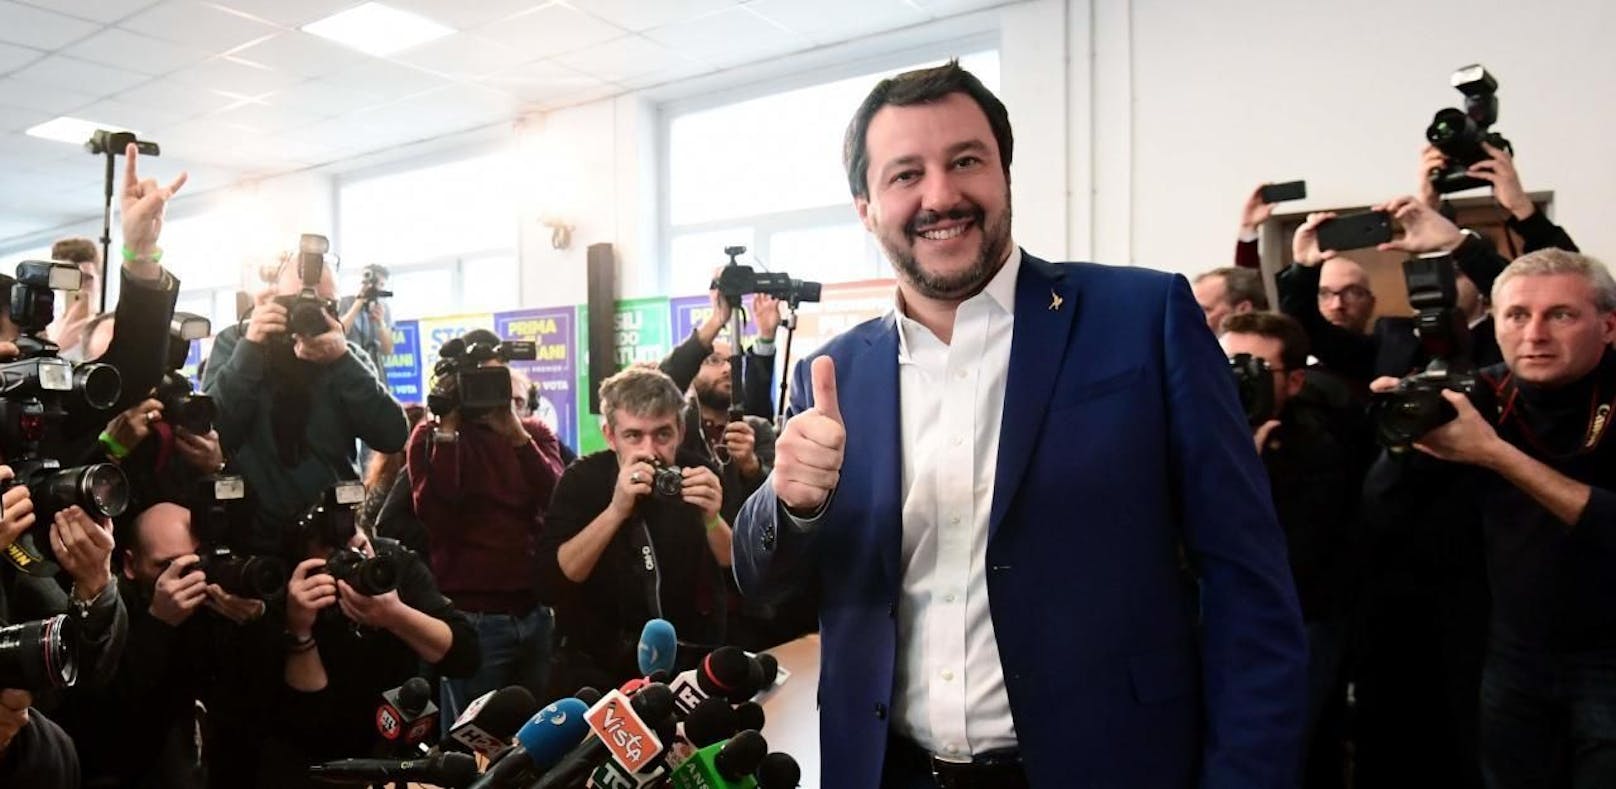 FPÖ OÖ lädt Matteo Salvini zum Wels-Urlaub ein